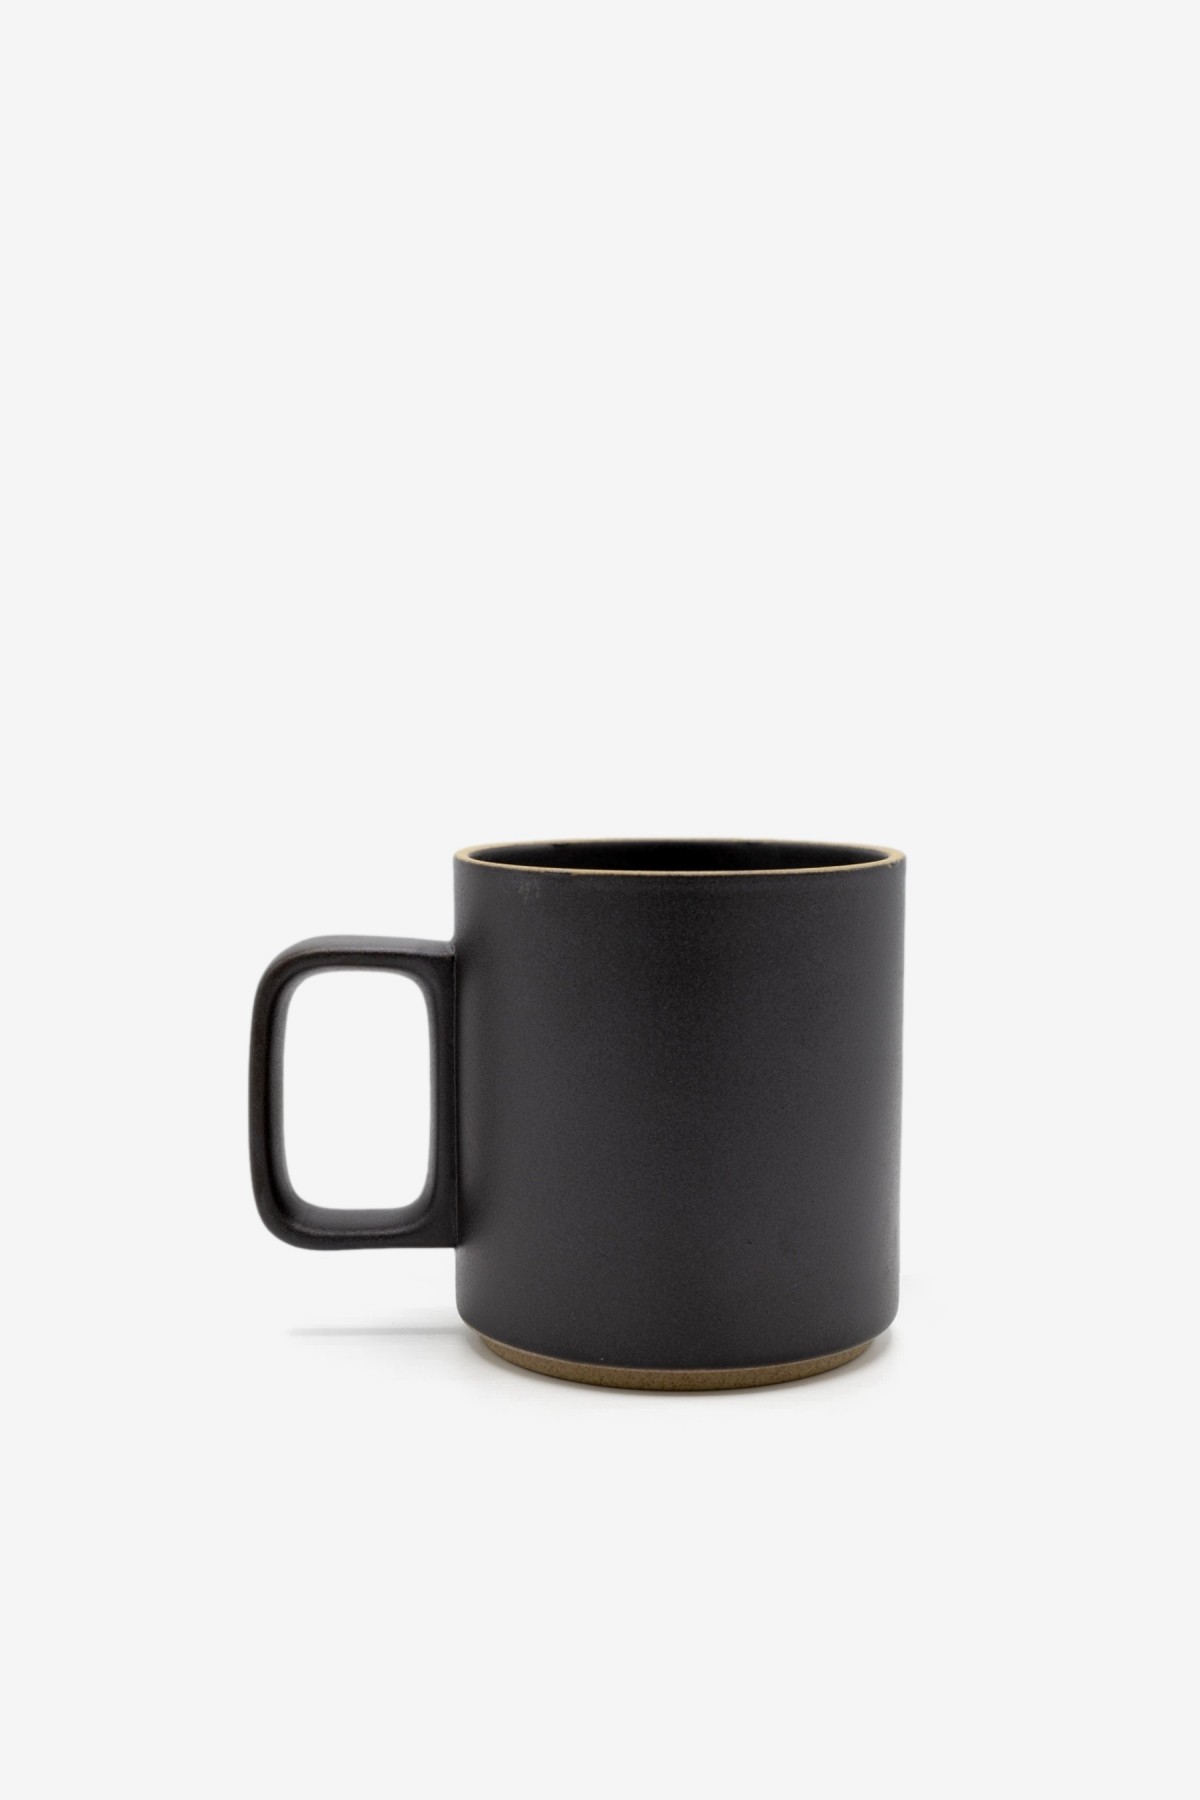 Hasami Porcelain Mug Cup Medium in Black